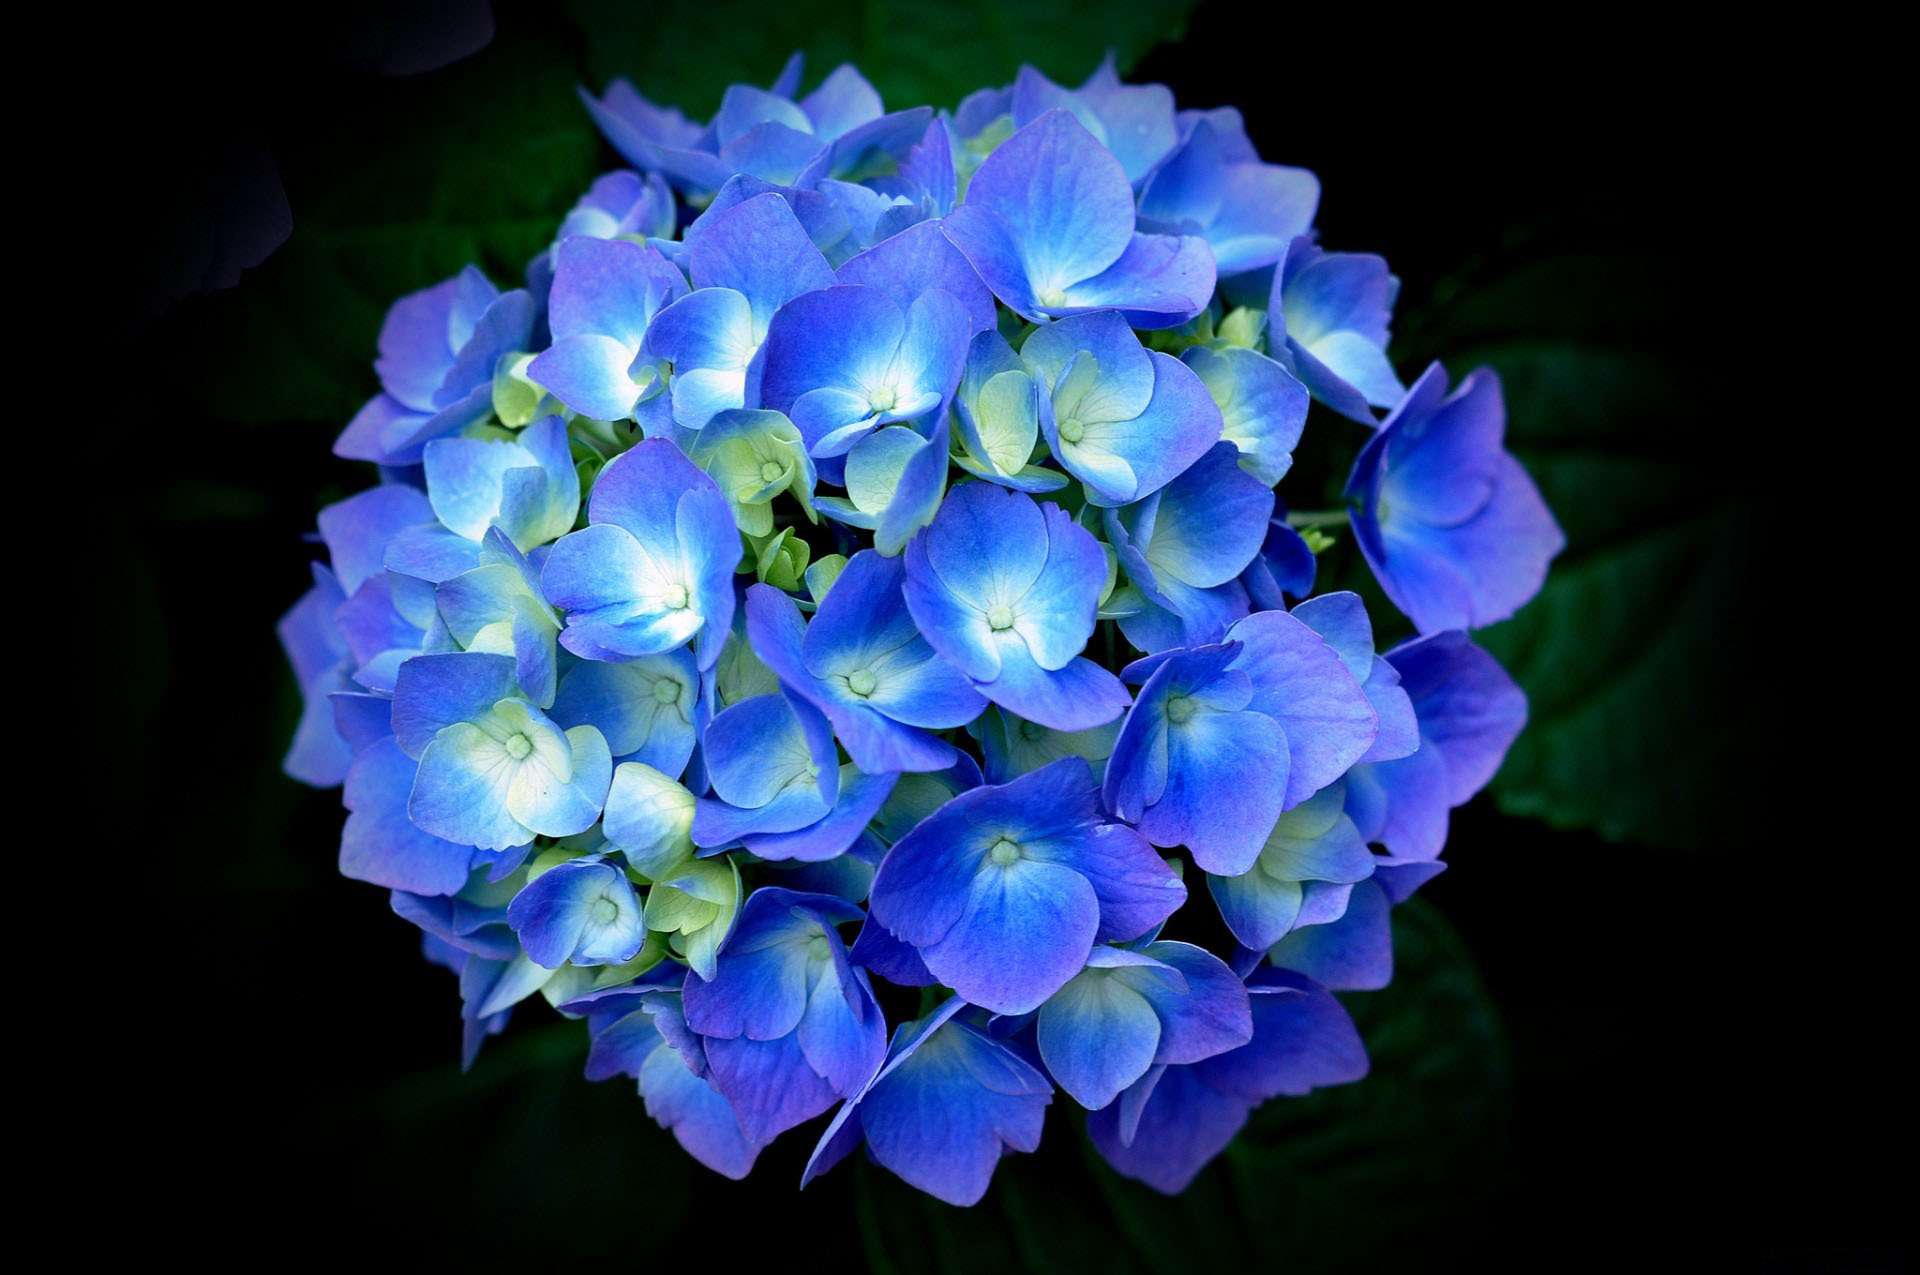 Chào đón những đóa hoa cẩm tú cầu xanh đầy nét duyên dáng và tinh khôi. Với màu sắc tươi sáng và hình dáng thanh thoát, những bông hoa cẩm tú cầu xanh chắc chắn sẽ làm cho không gian của bạn trở nên lãng mạn hơn bao giờ hết.